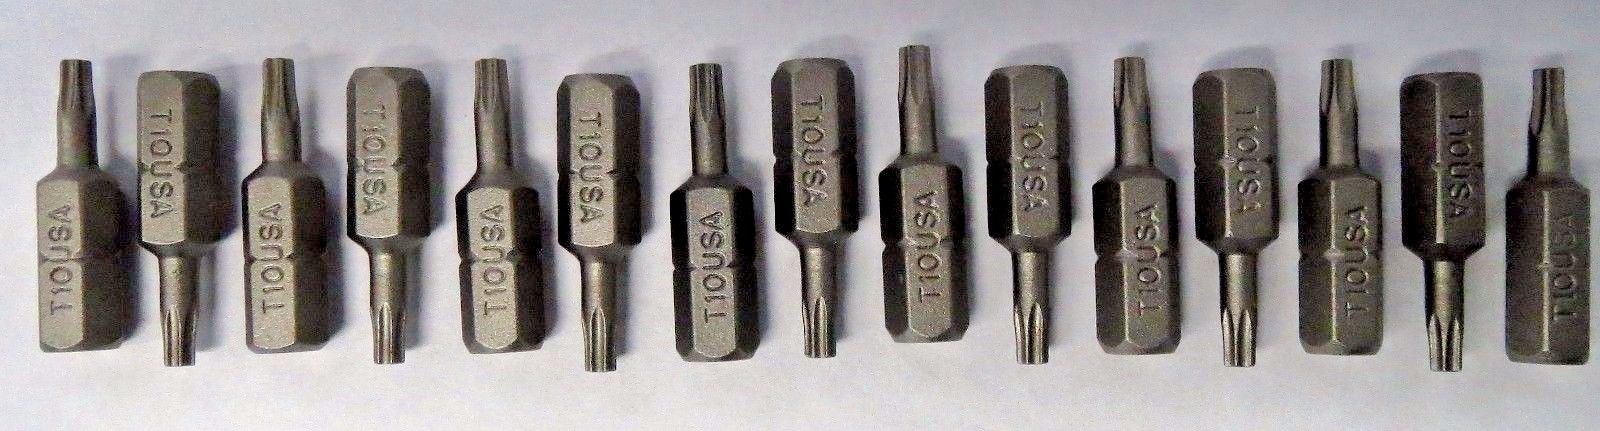 Bosch T10 x 1" Insert Bits Screw Tips 15pcs. 9915370 USA